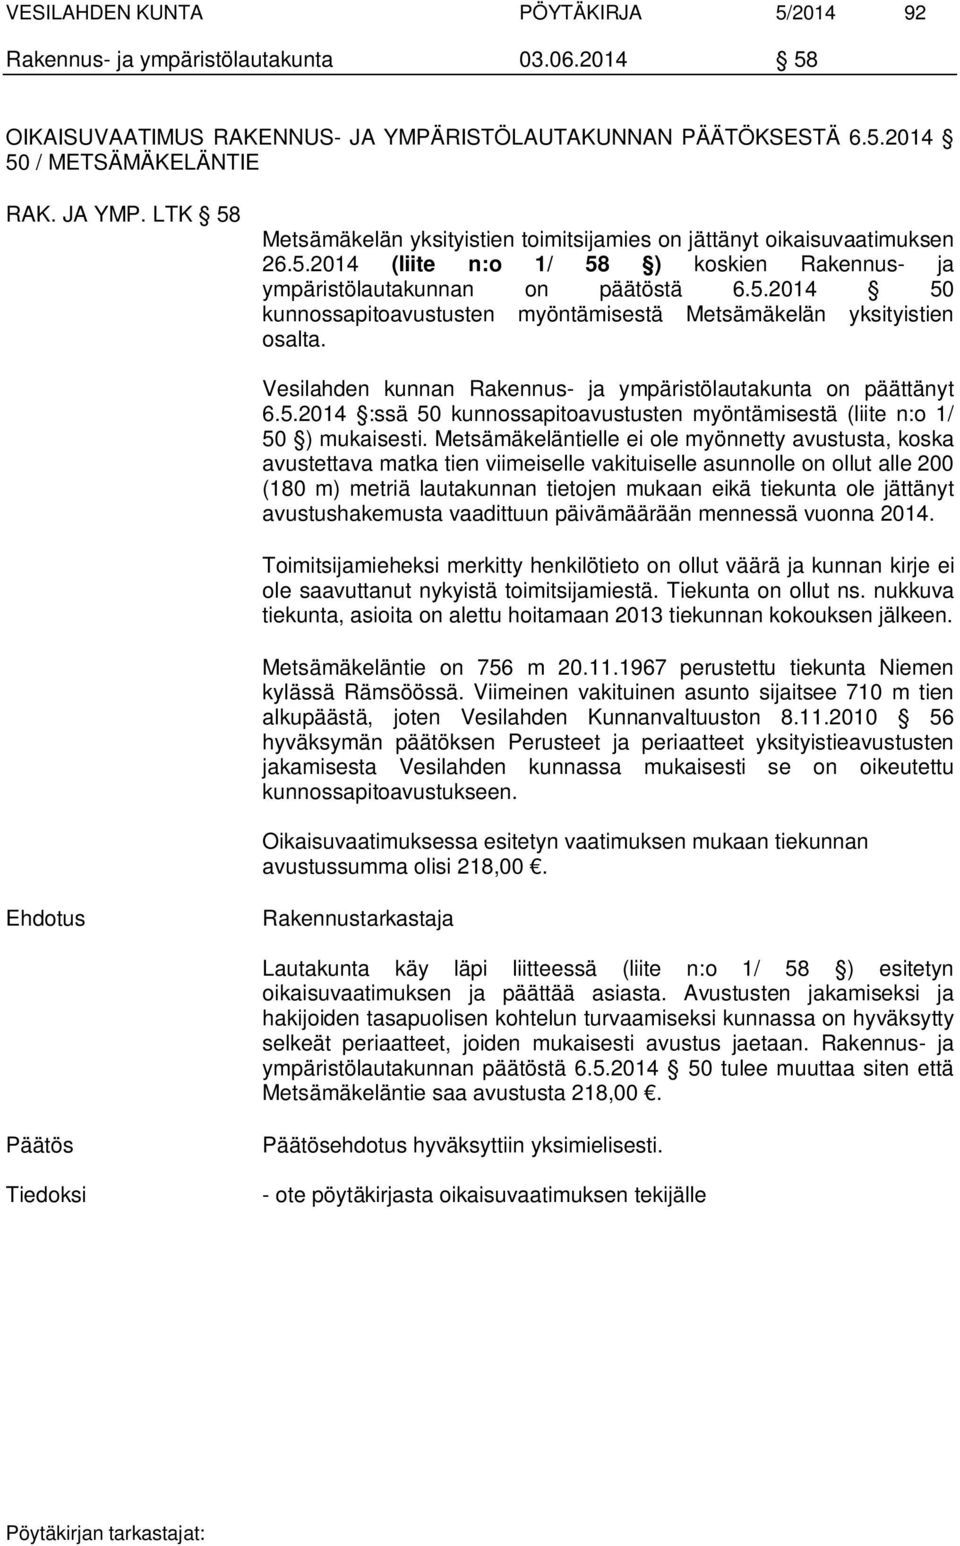 5.2014 50 kunnossapitoavustusten myöntämisestä Metsämäkelän yksityistien osalta. Vesilahden kunnan Rakennus- ja ympäristölautakunta on päättänyt 6.5.2014 :ssä 50 kunnossapitoavustusten myöntämisestä (liite n:o 1/ 50 ) mukaisesti.